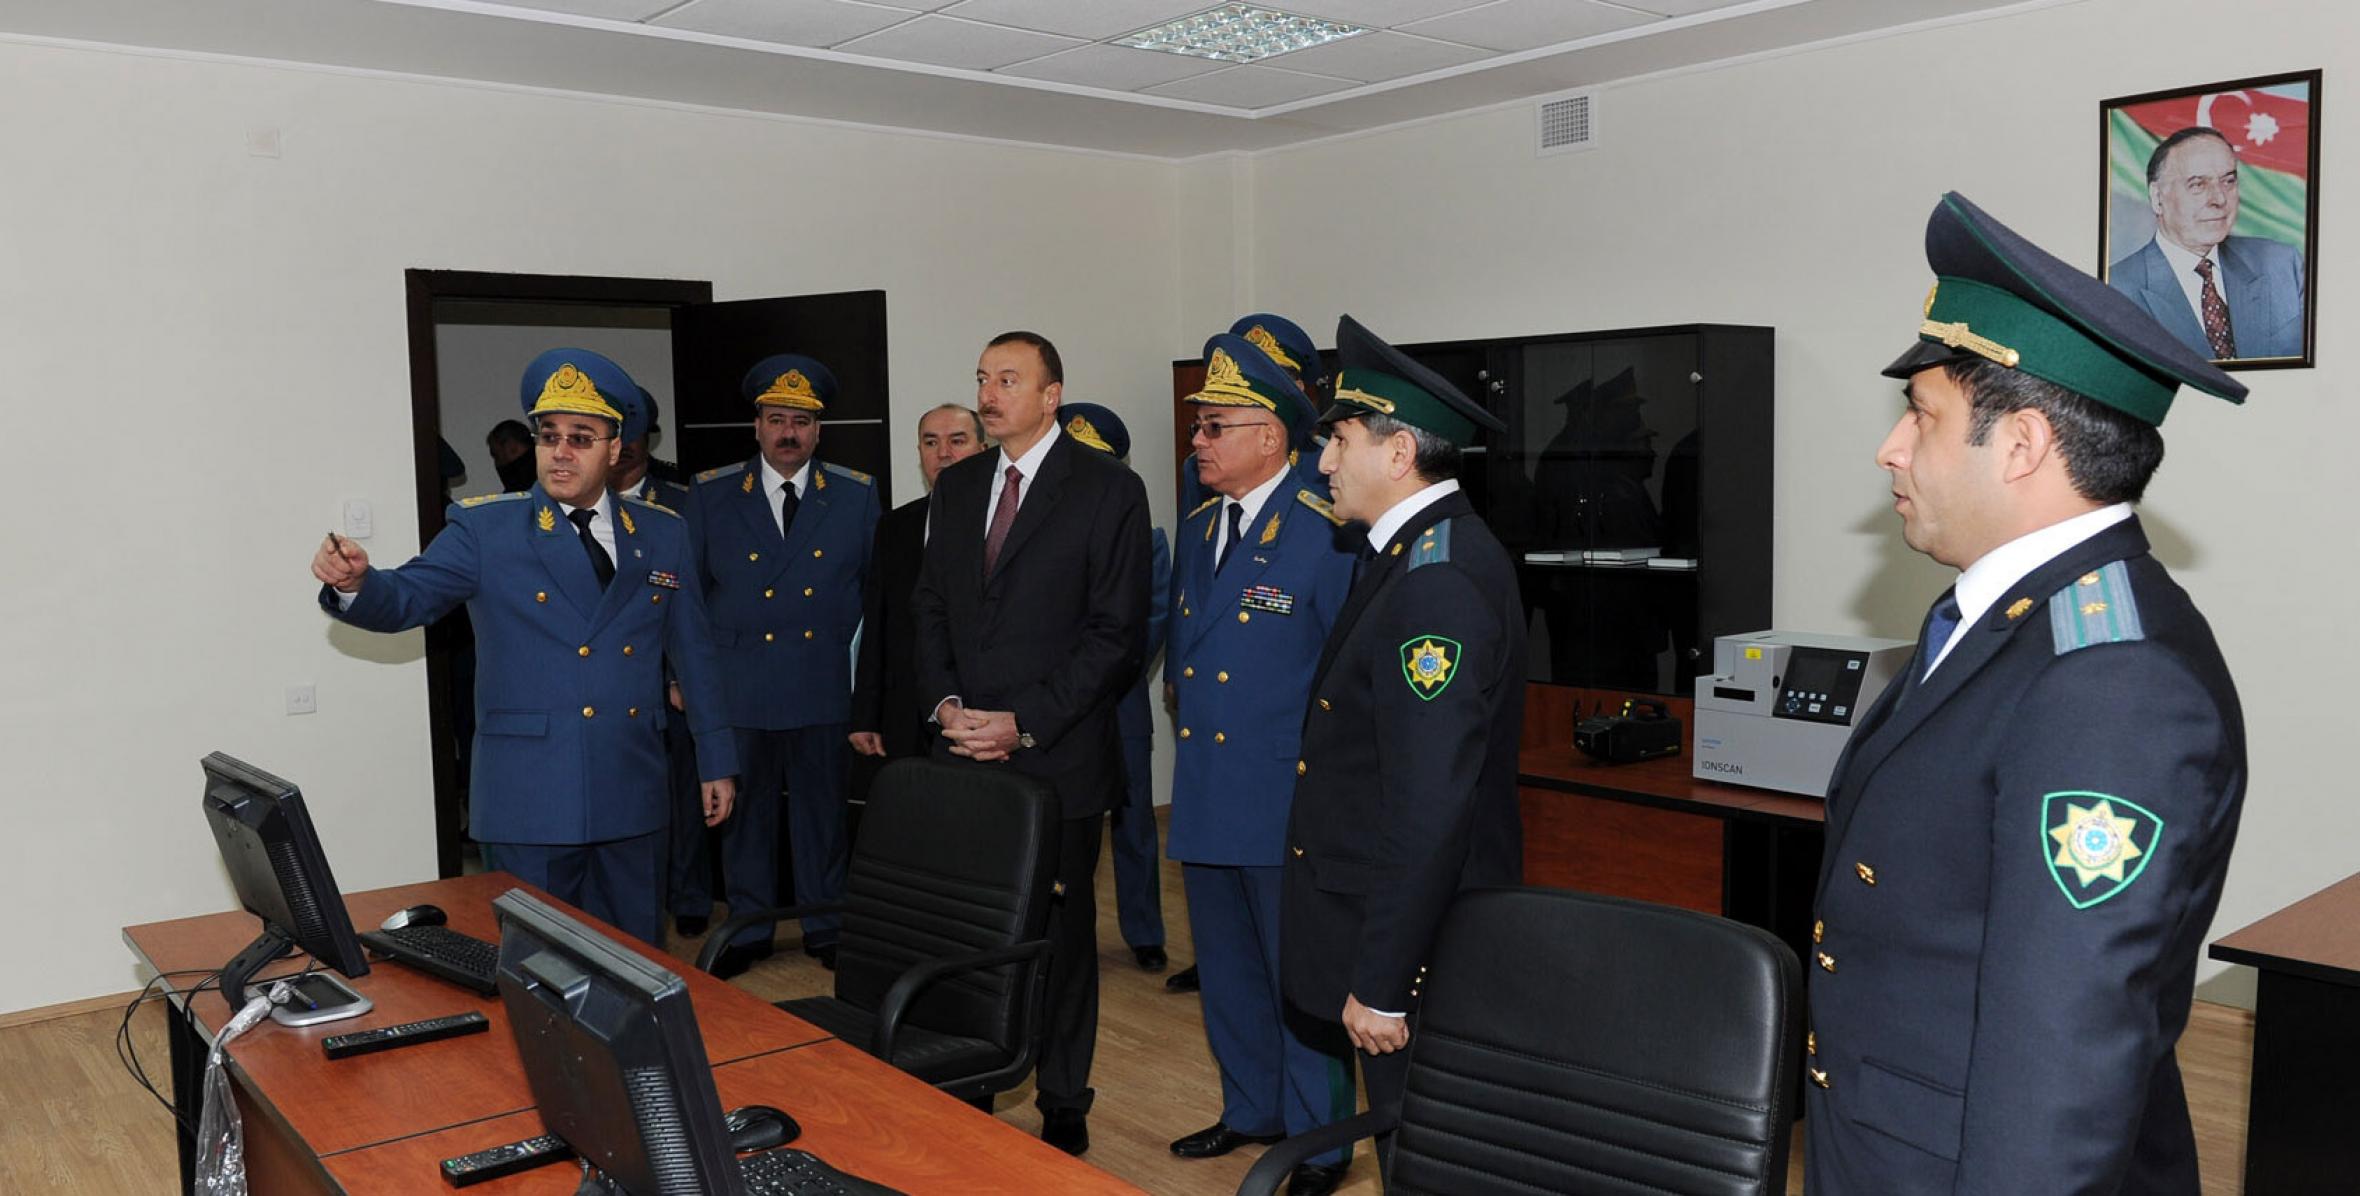 Ilham Aliyev took part at the opening ceremony of “Sinigkorpu” border customs check-point of Gazakh region